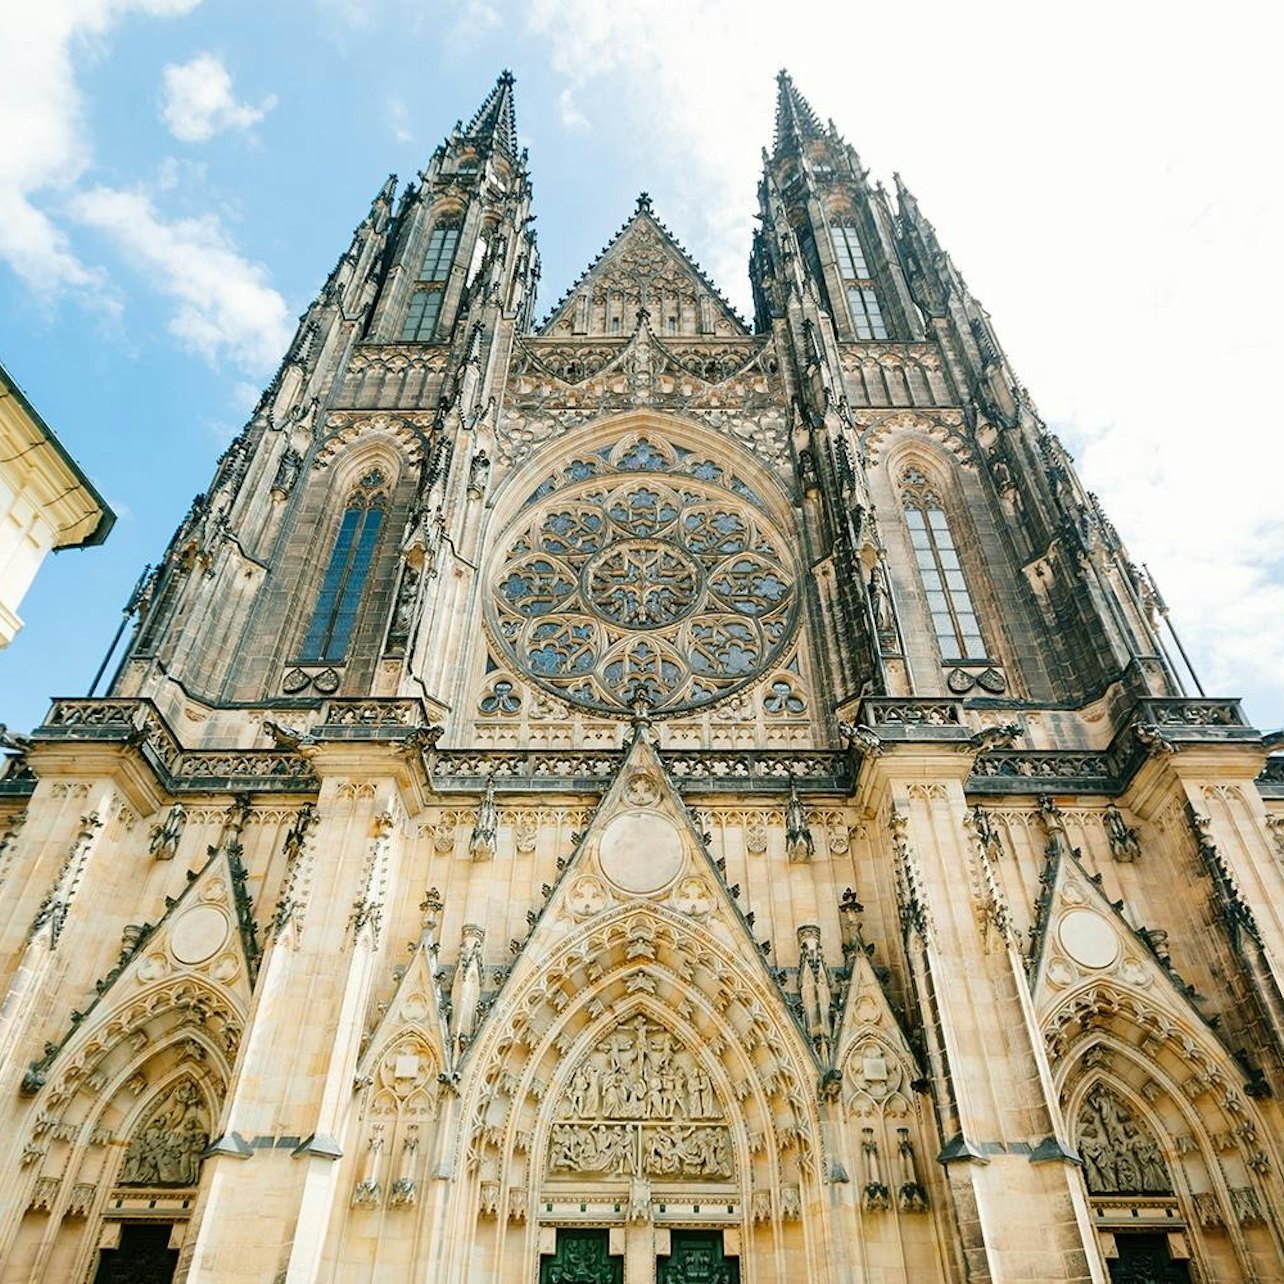 Excursión de un día a Praga desde Viena - Alojamientos en Viena